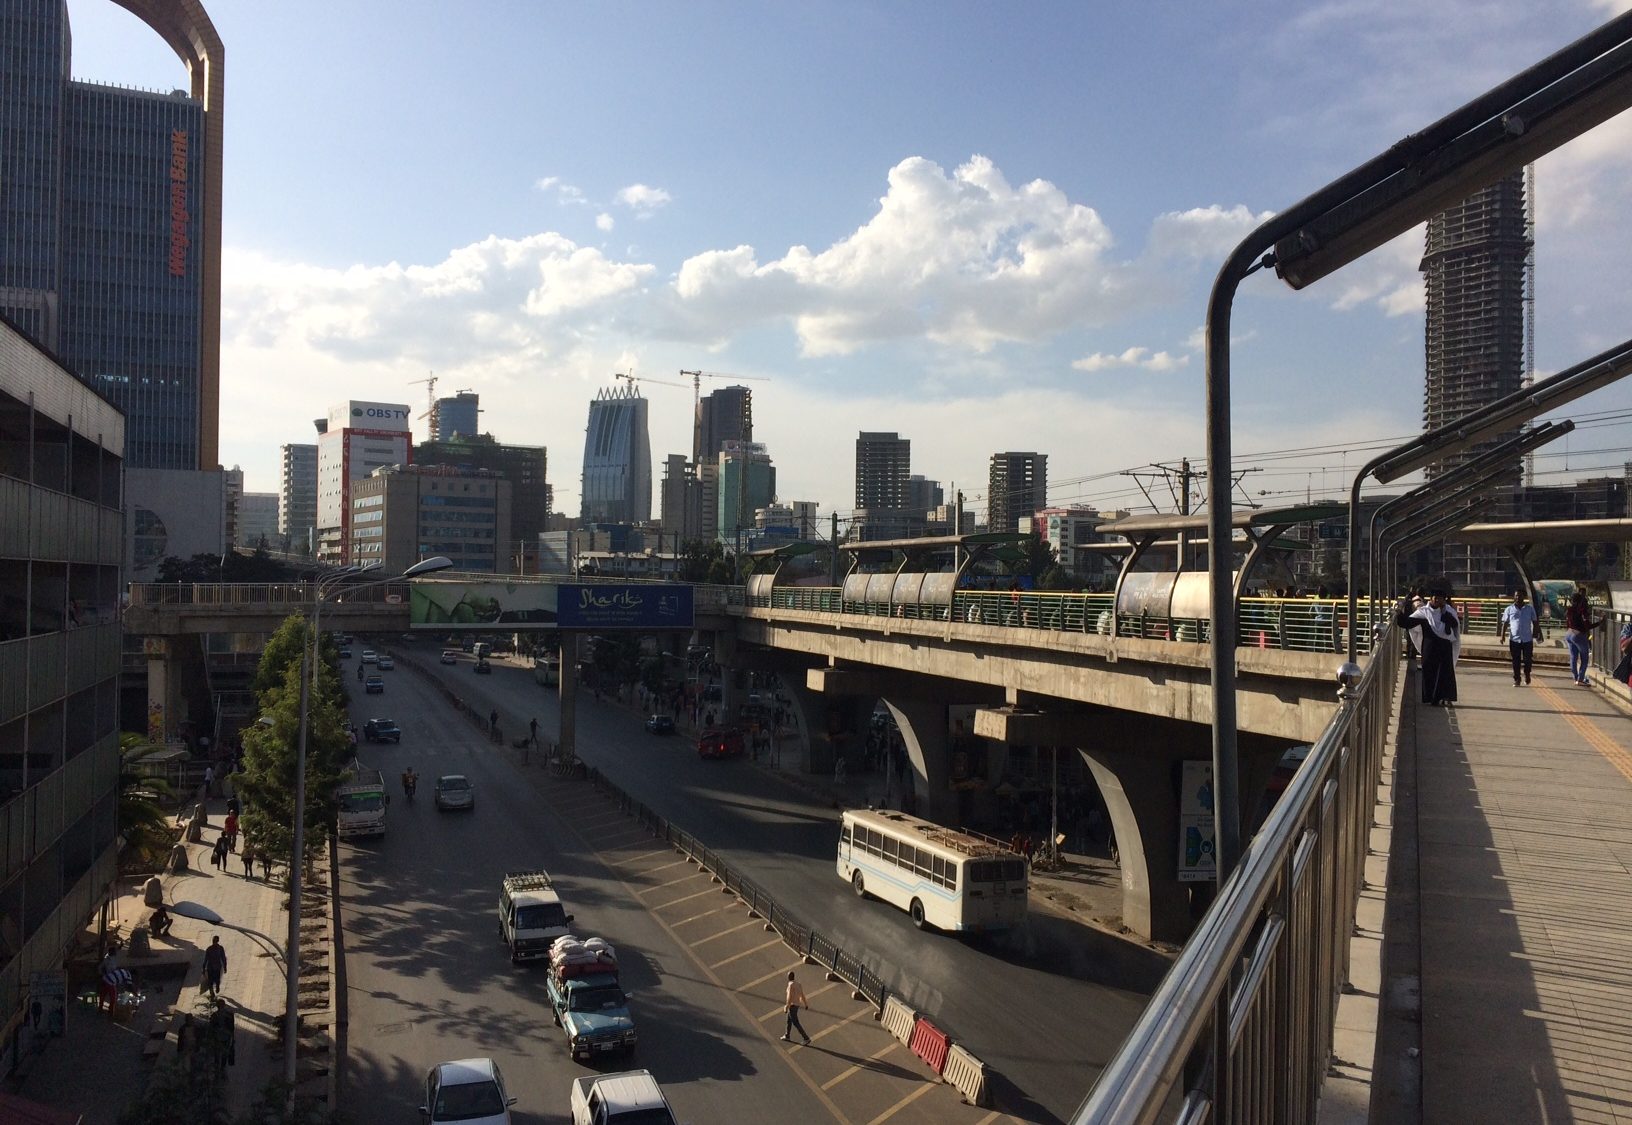 Downtown Addis Abeba